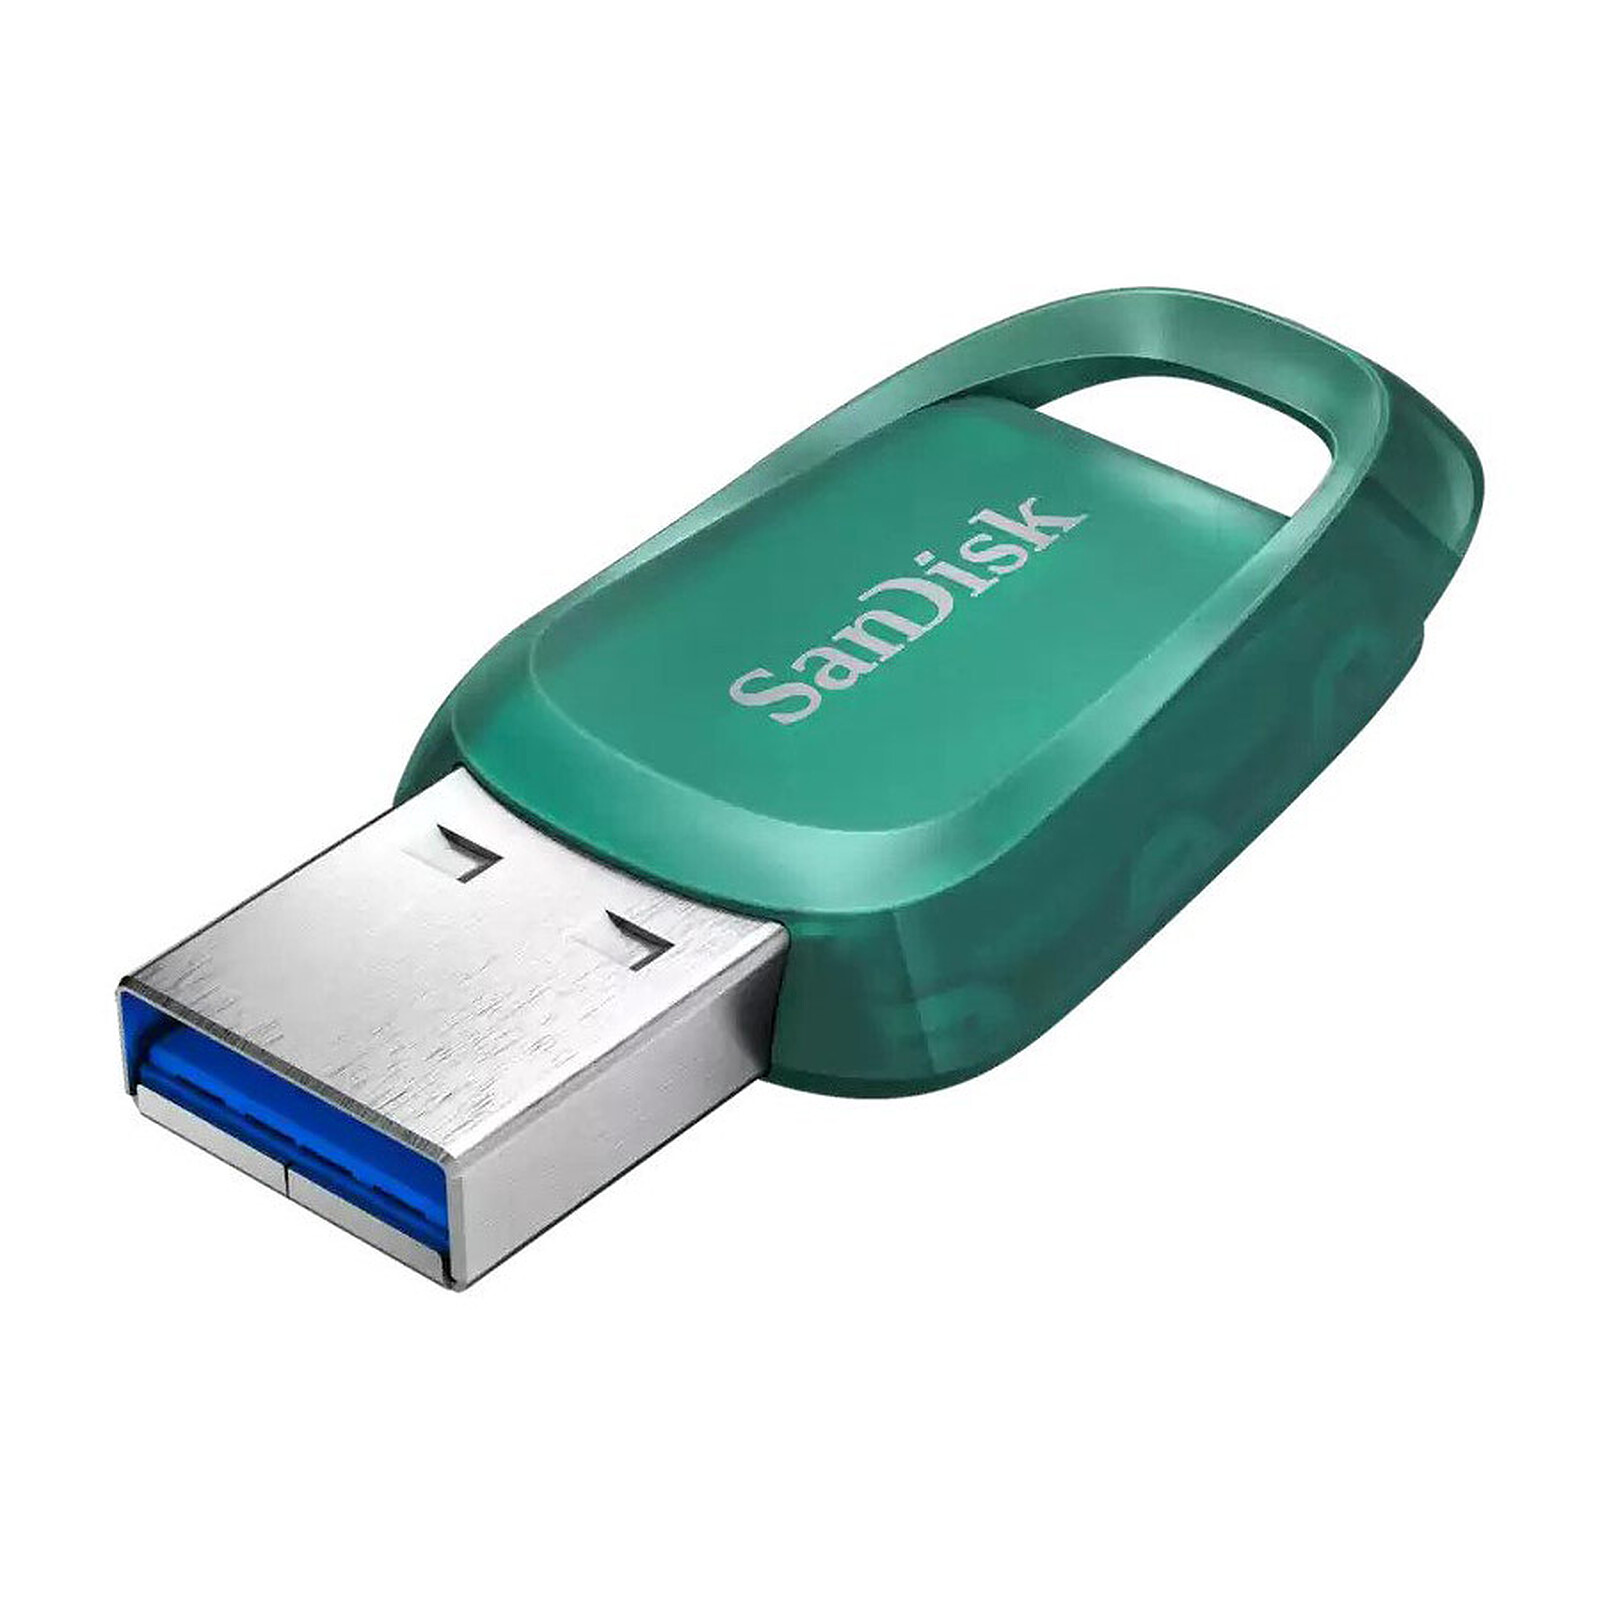 Clé USB 512Go USB 3.0 SanDisk Ultra Flair